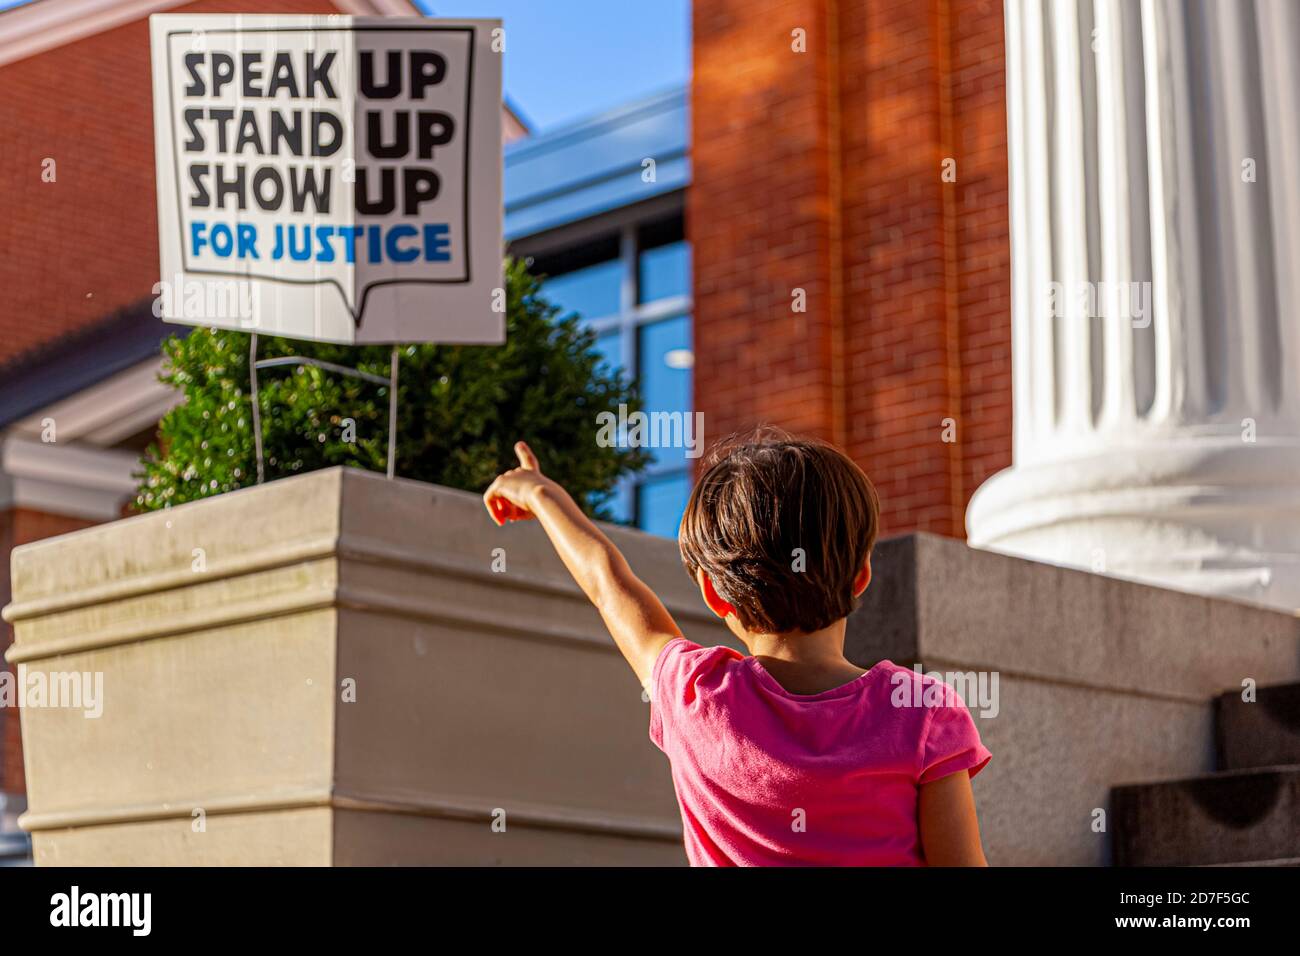 Un'immagine astratta unica in cui una bambina sta indicando un posto di segno che dice parlare in su, levarsi in piedi in su, mostrare in su per giustizia. Un'immagine concettuale per i social awar Foto Stock